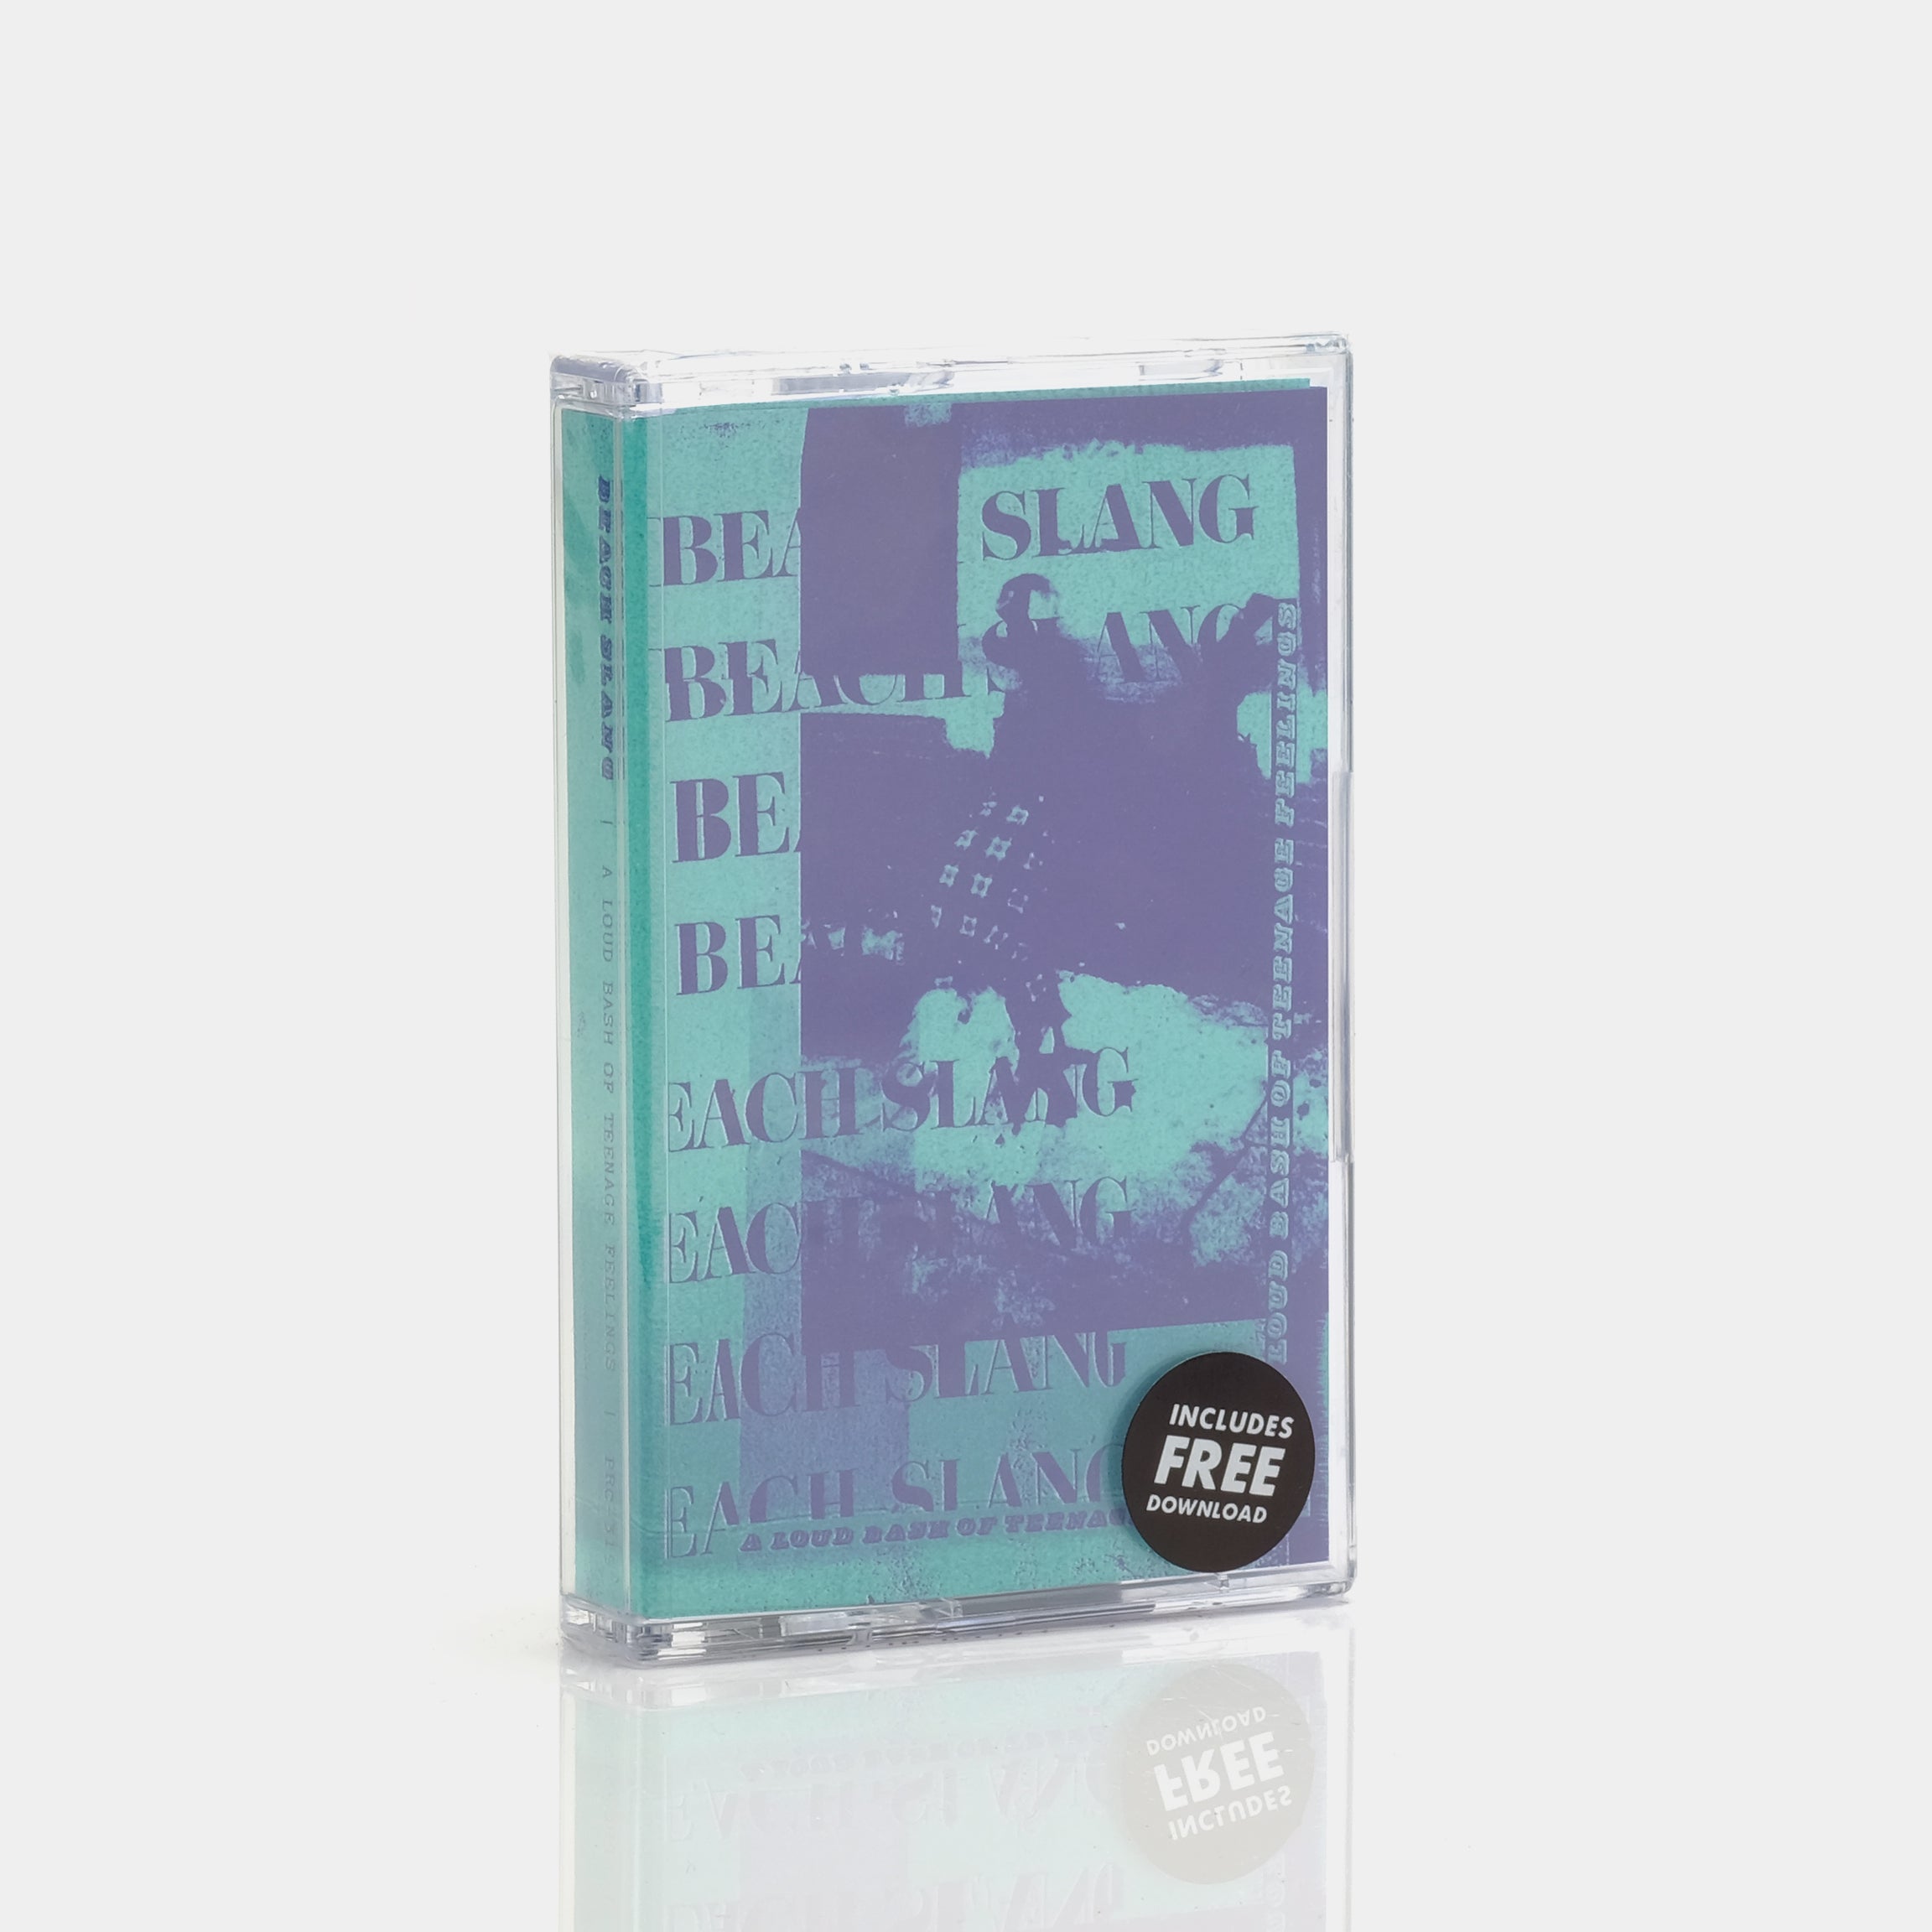 Beach Slang - A Loud Bash Of Teenage Feelings Cassette Tape